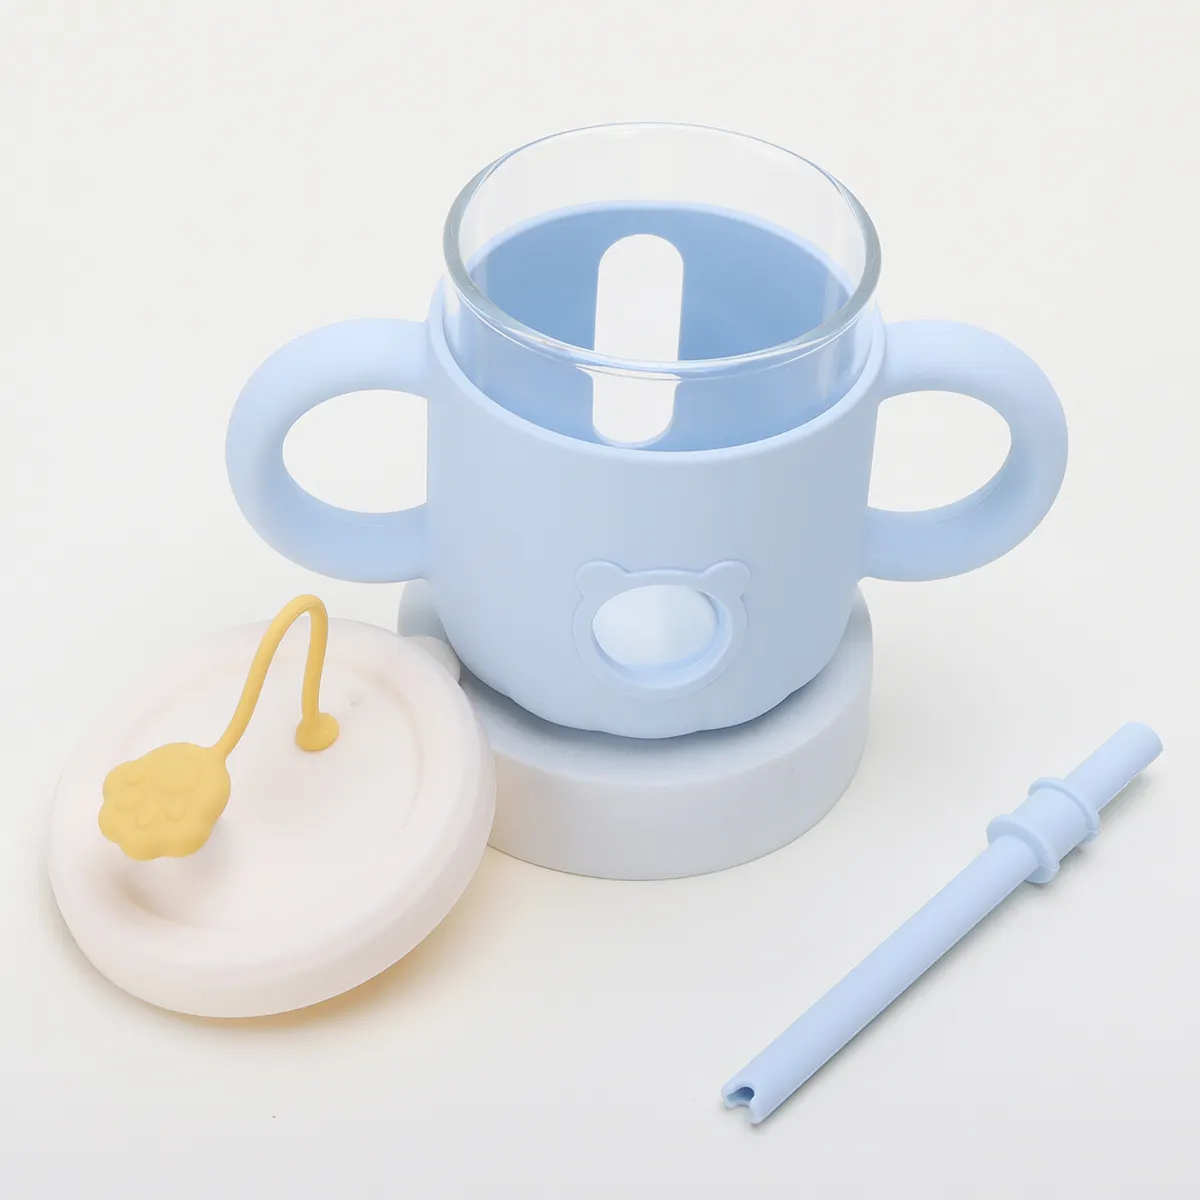 우유 유리 컵 유출 방지 시피 컵 뚜껑과 빨대가있는 실리콘 슬리브와 아기 우유 식수 병